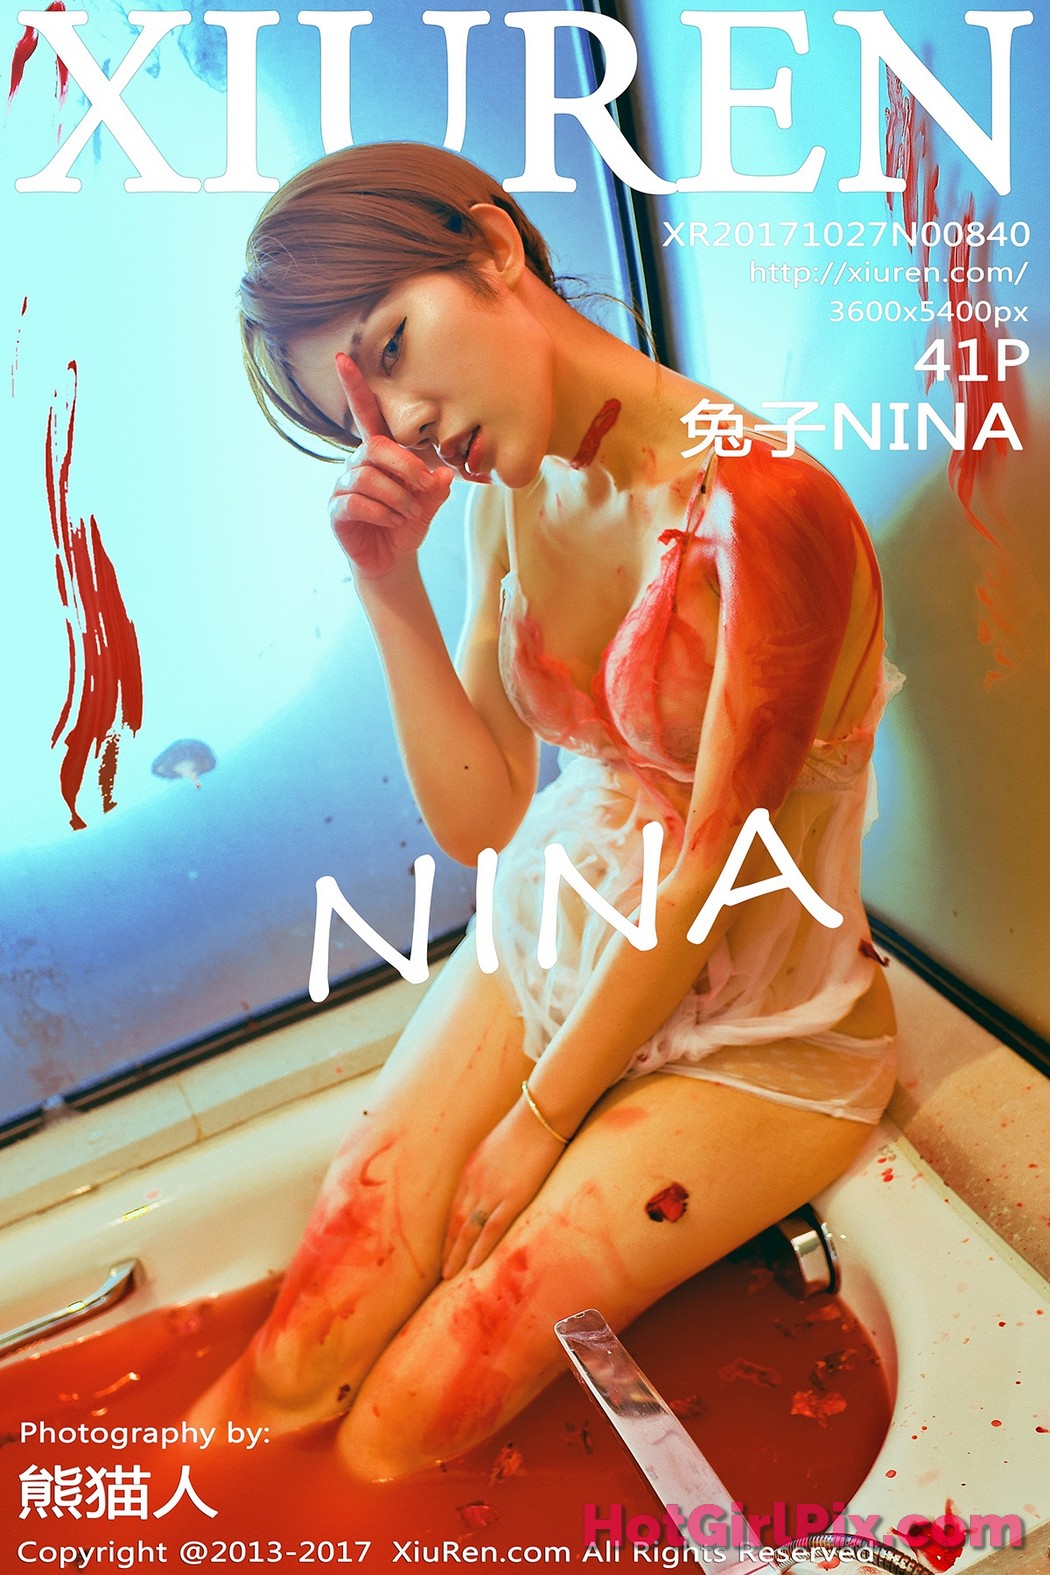 [XIUREN] No.840 兔子NINA Cover Photo